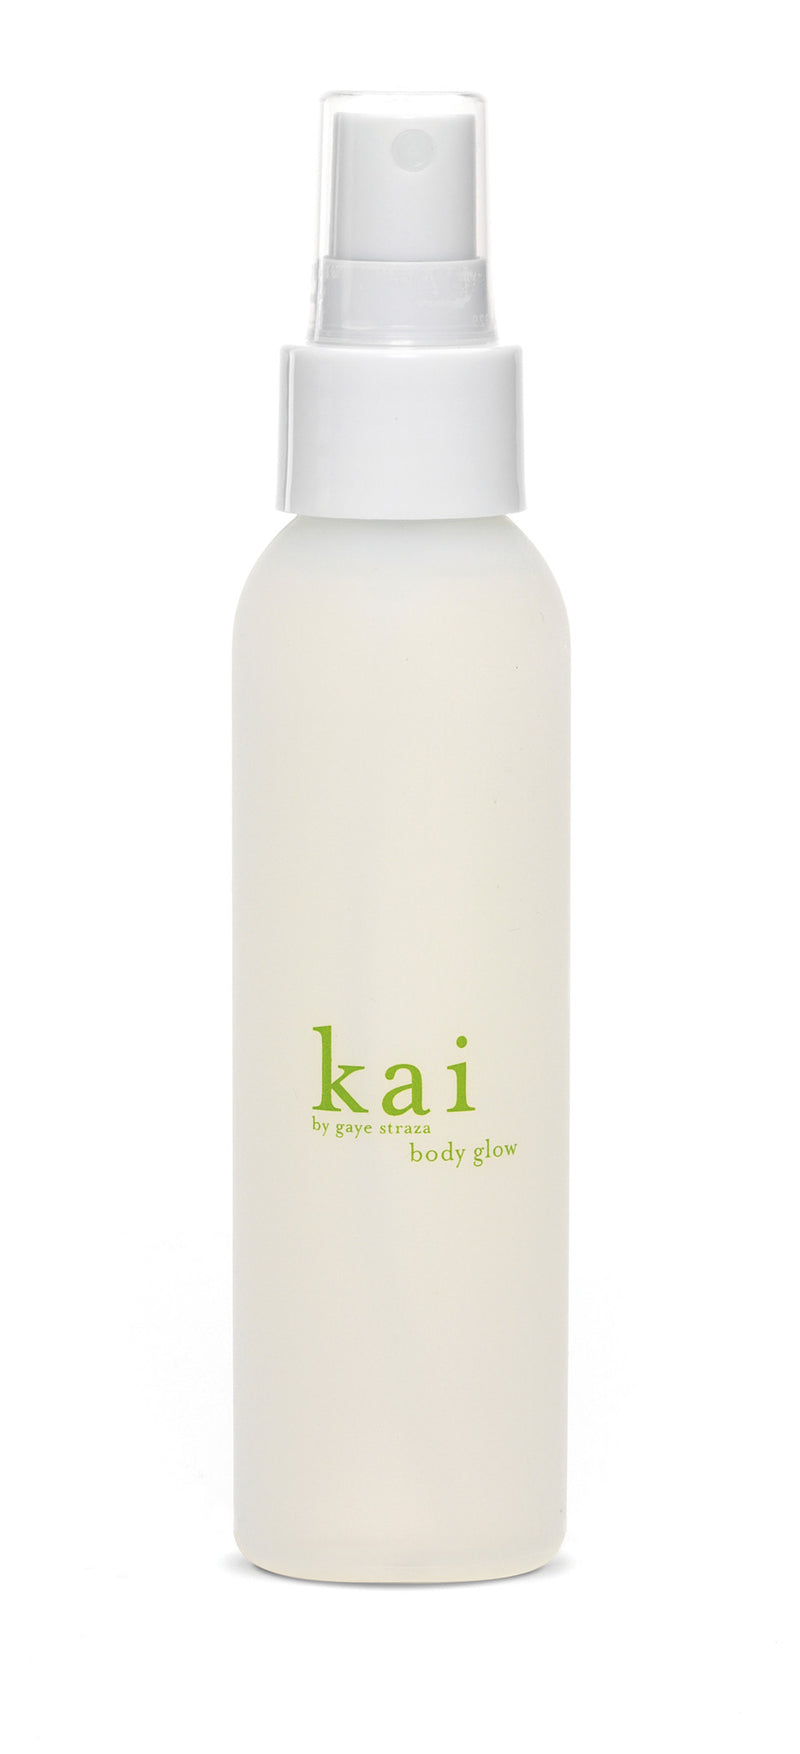 media image for kai body glow design by kai fragrance 1 213